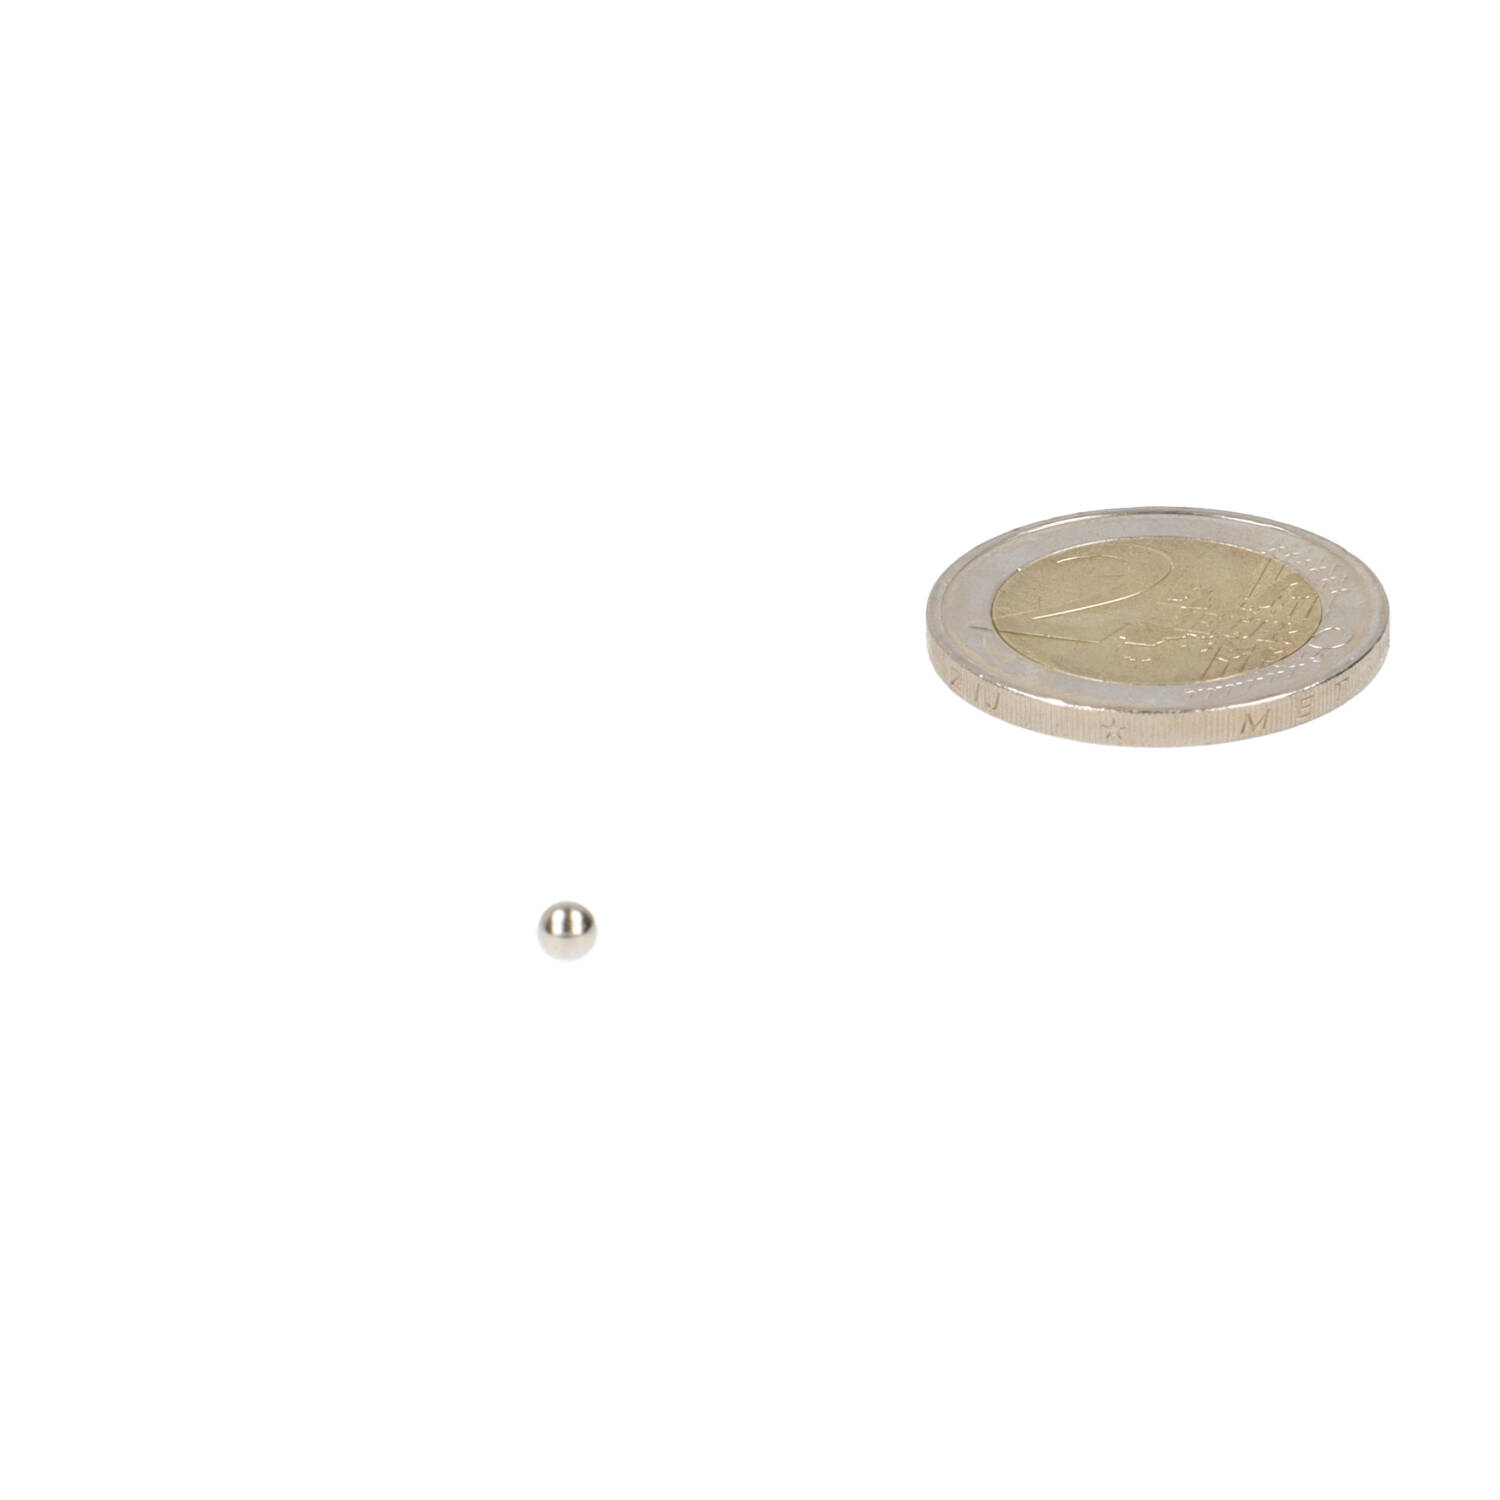 Aimant magnet décoratif Boule et Bill, jeu de rampe (55x79mm)